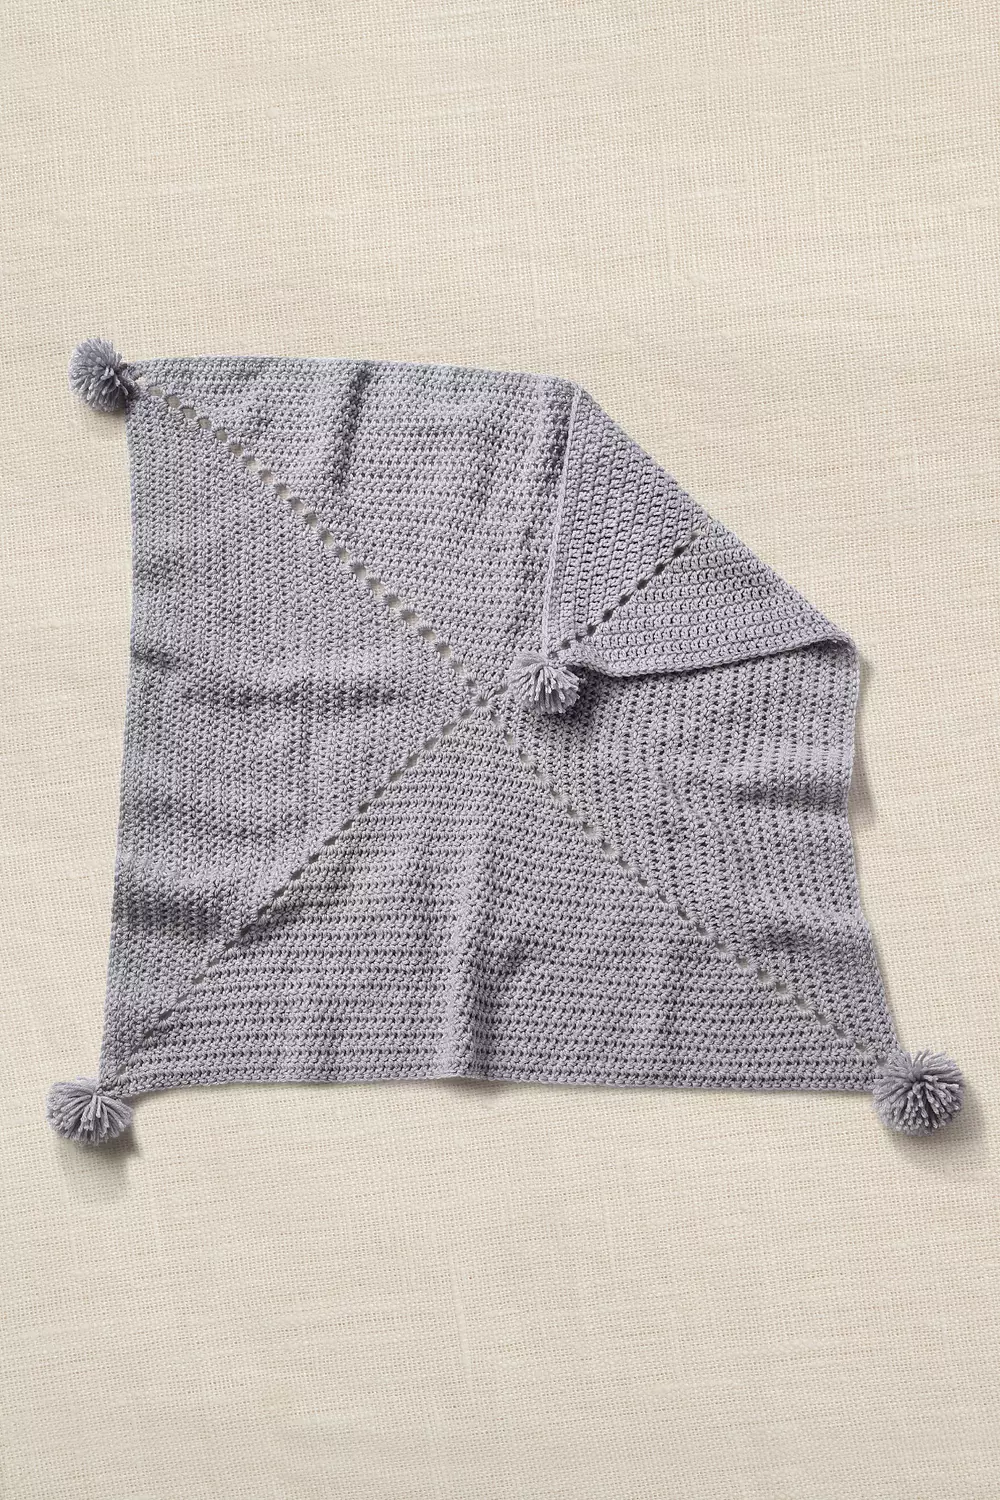 Calm Club | Kit y guía de tejer | Crochet una manta de punto grueso | Kits  de manualidades para adultos | Kit de ganchillo para principiantes 